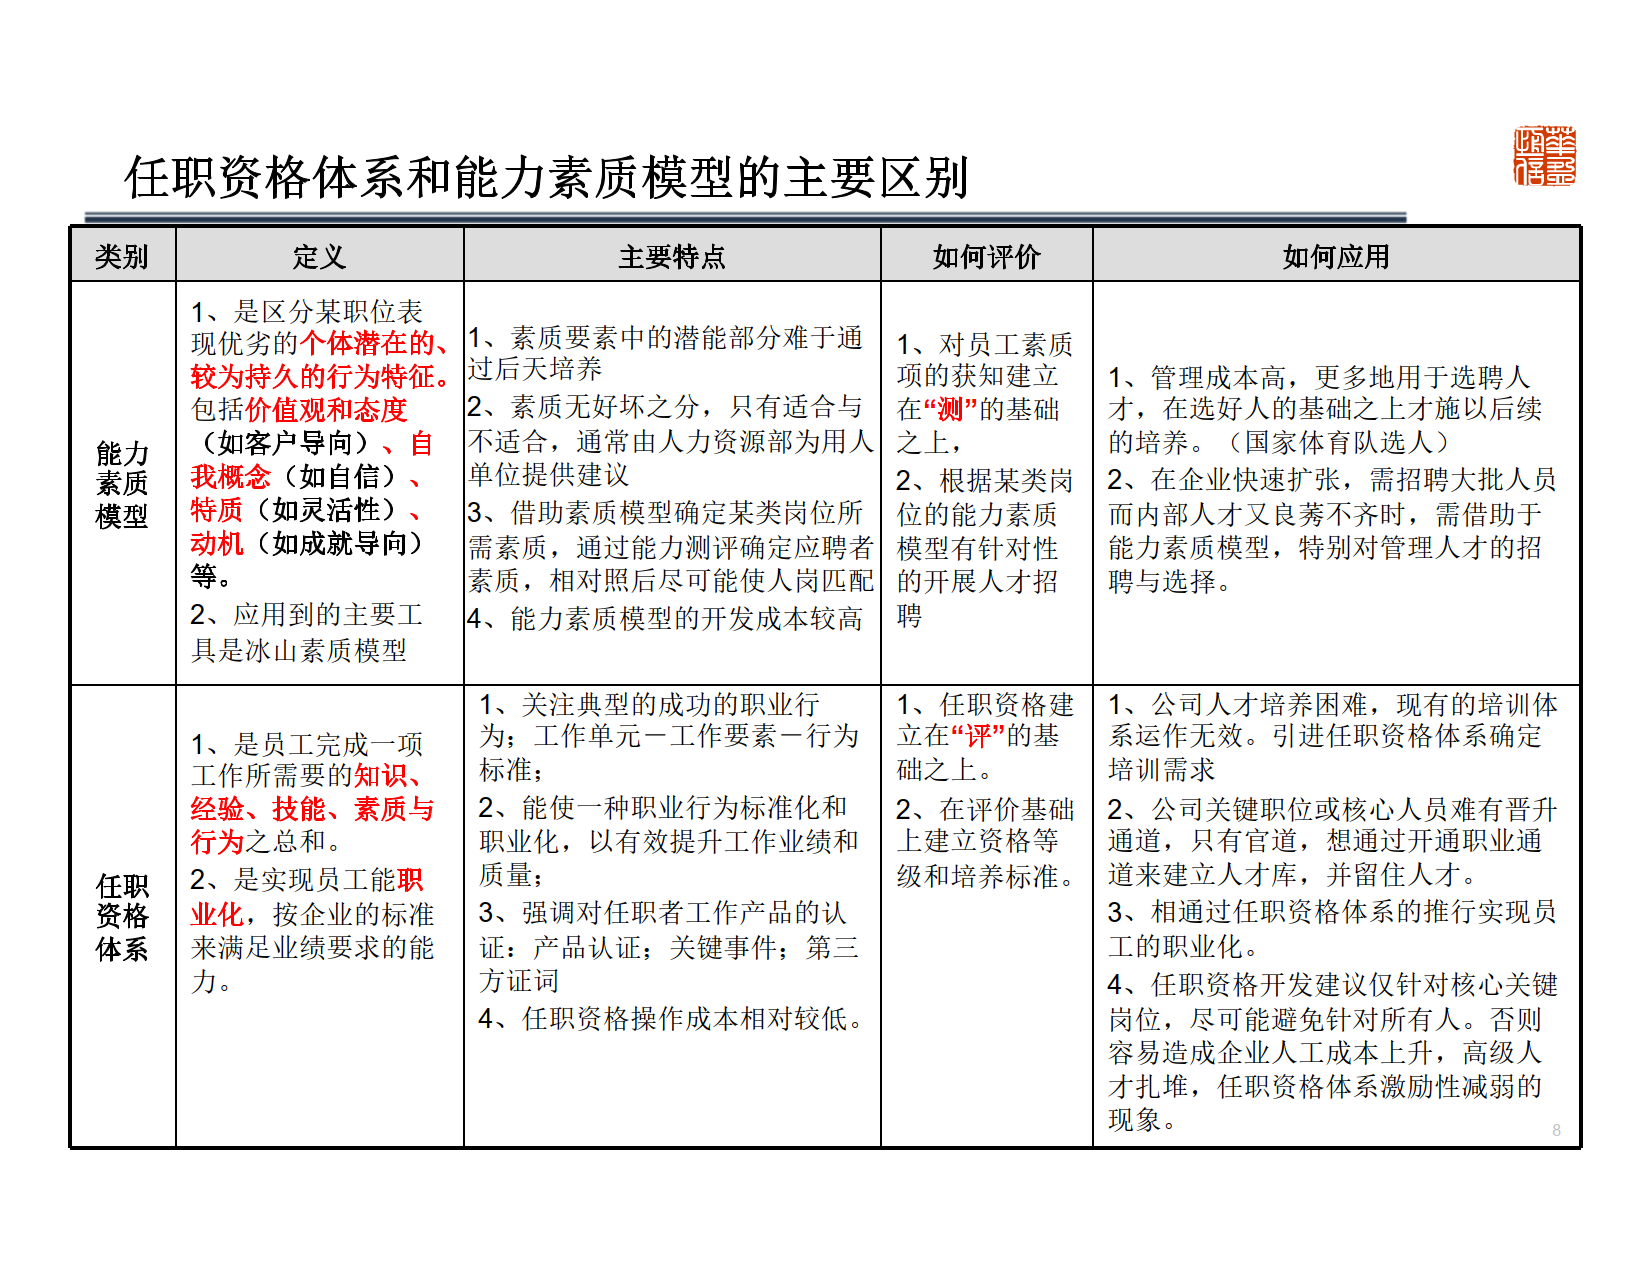 深圳XX管理顾问有限公司-基于能力的任职资格体系设计及应用 Copy_3.png